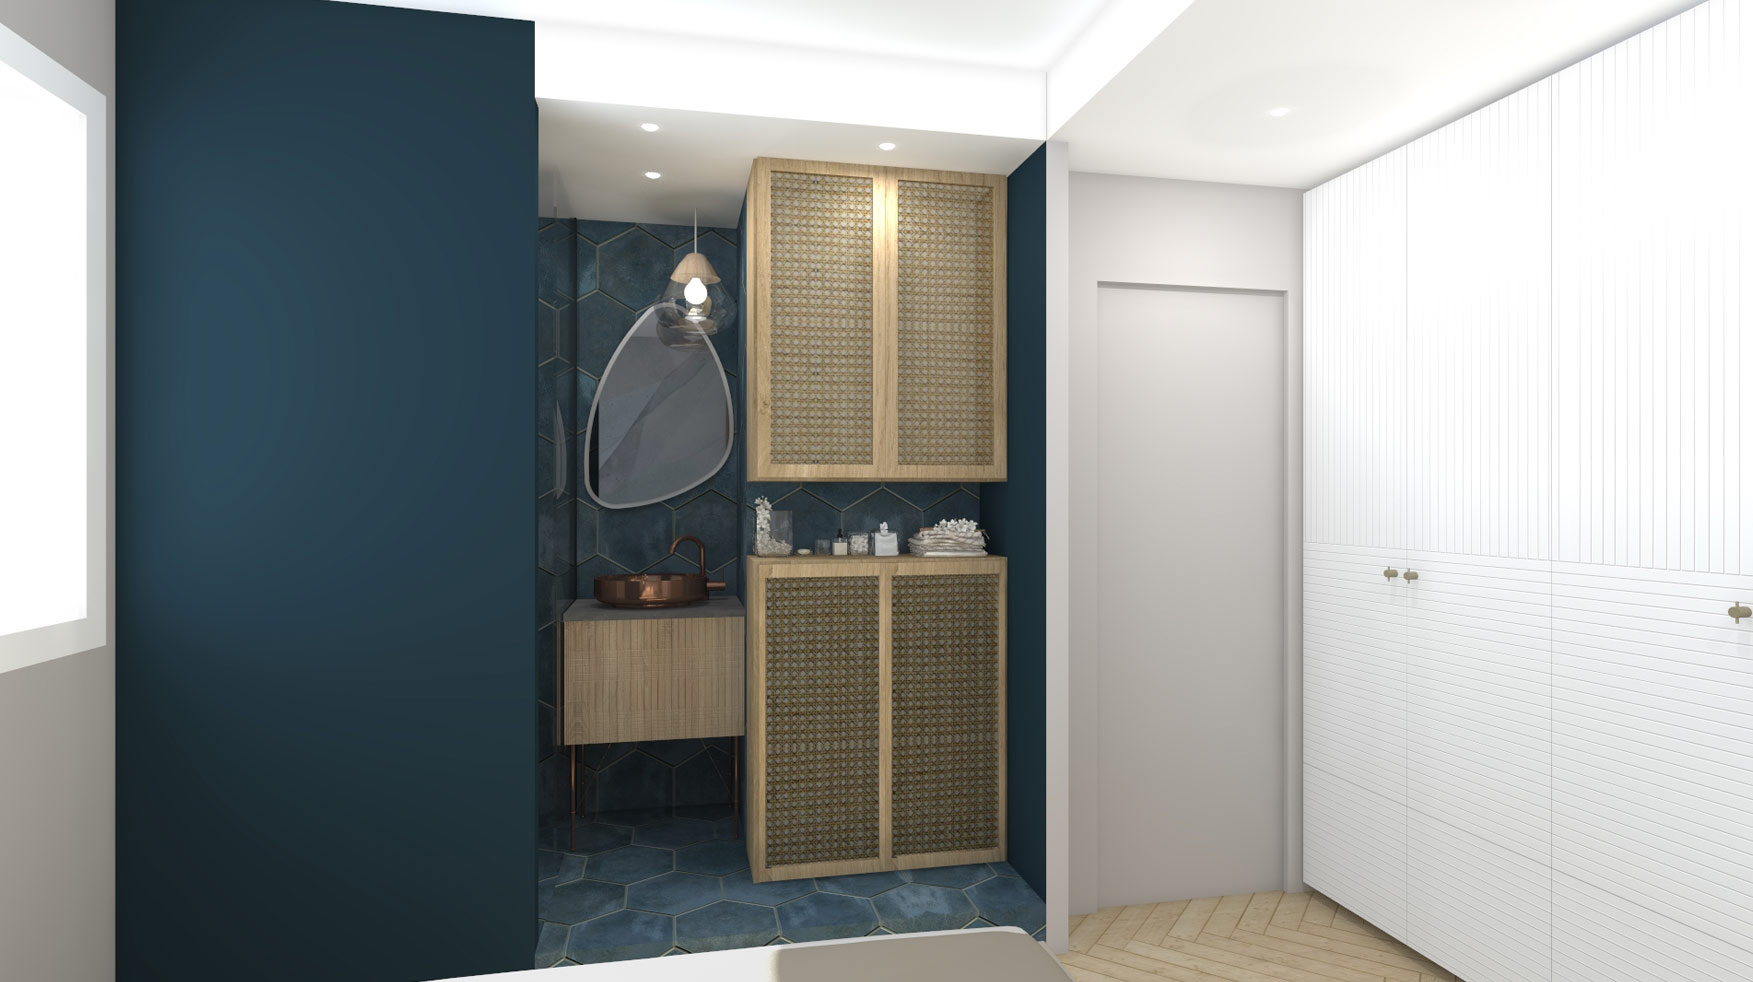 KLR : Rénovation intérieure d’un appartement à Paris, aménagement d’une suite parentale.